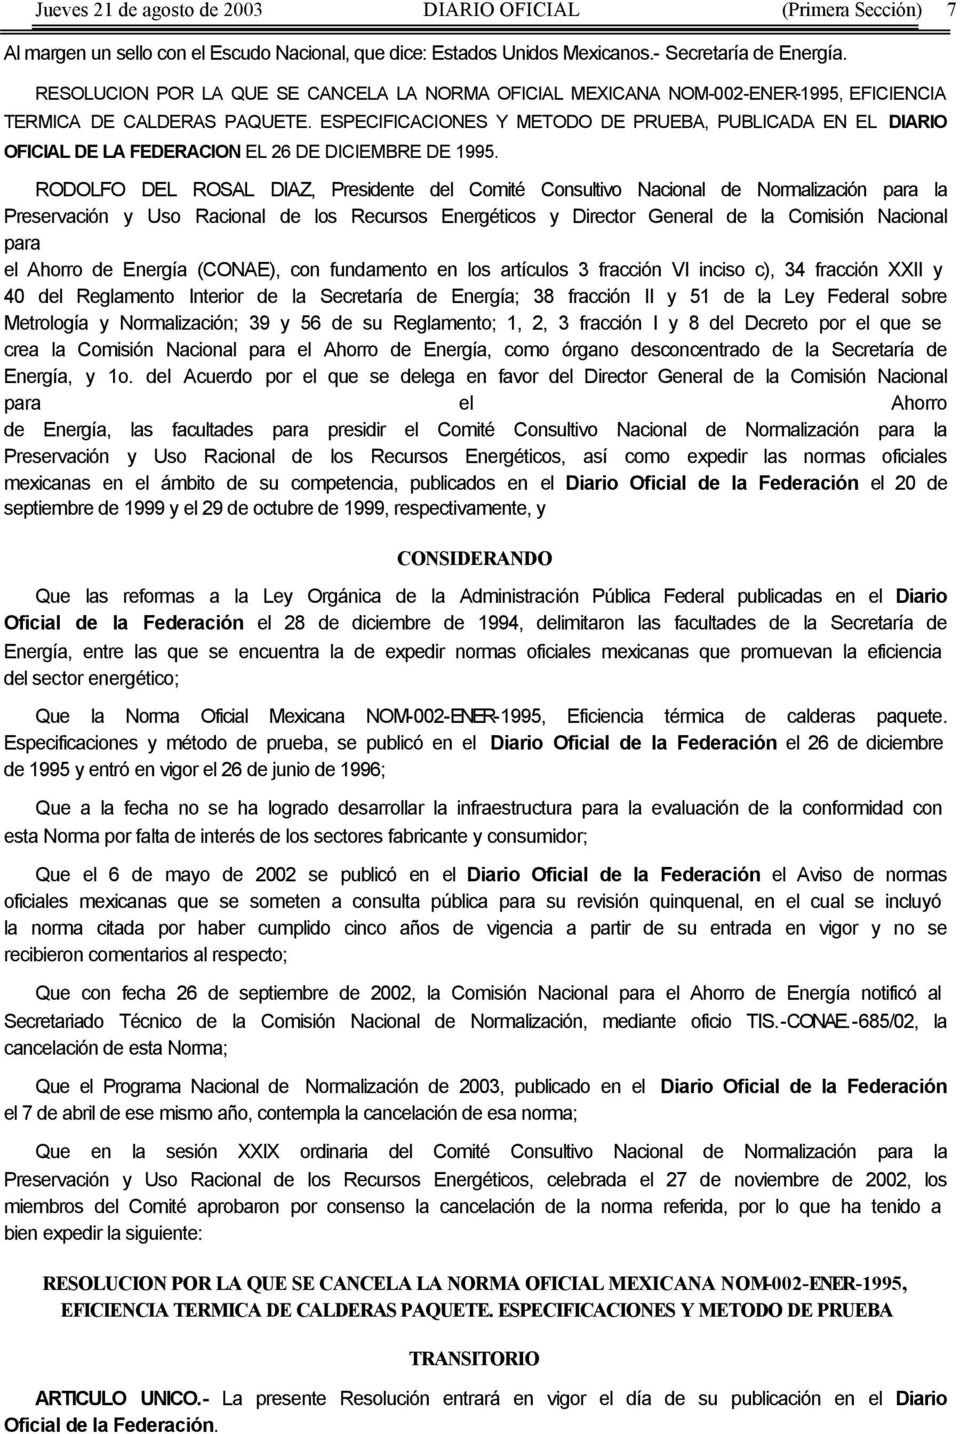 ESPECIFICACIONES Y METODO DE PRUEBA, PUBLICADA EN EL DIARIO OFICIAL DE LA FEDERACION EL 26 DE DICIEMBRE DE 1995.